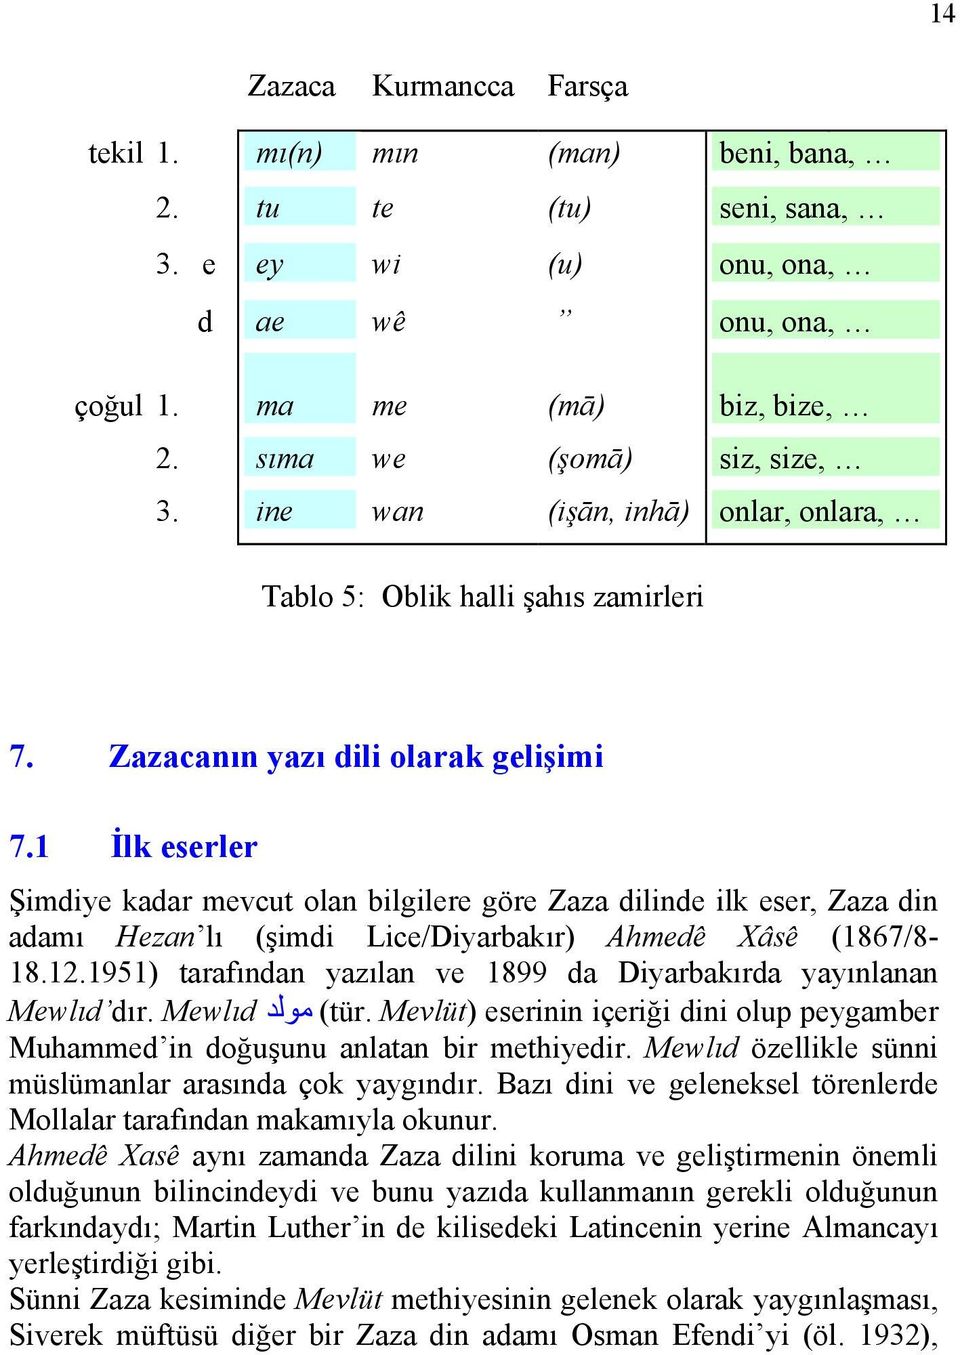 1 İlk eserler Şimdiye kadar mevcut olan bilgilere göre Zaza dilinde ilk eser, Zaza din adamı Hezan lı (şimdi Lice/Diyarbakır) Ahmedê Xâsê (1867/8-18.12.